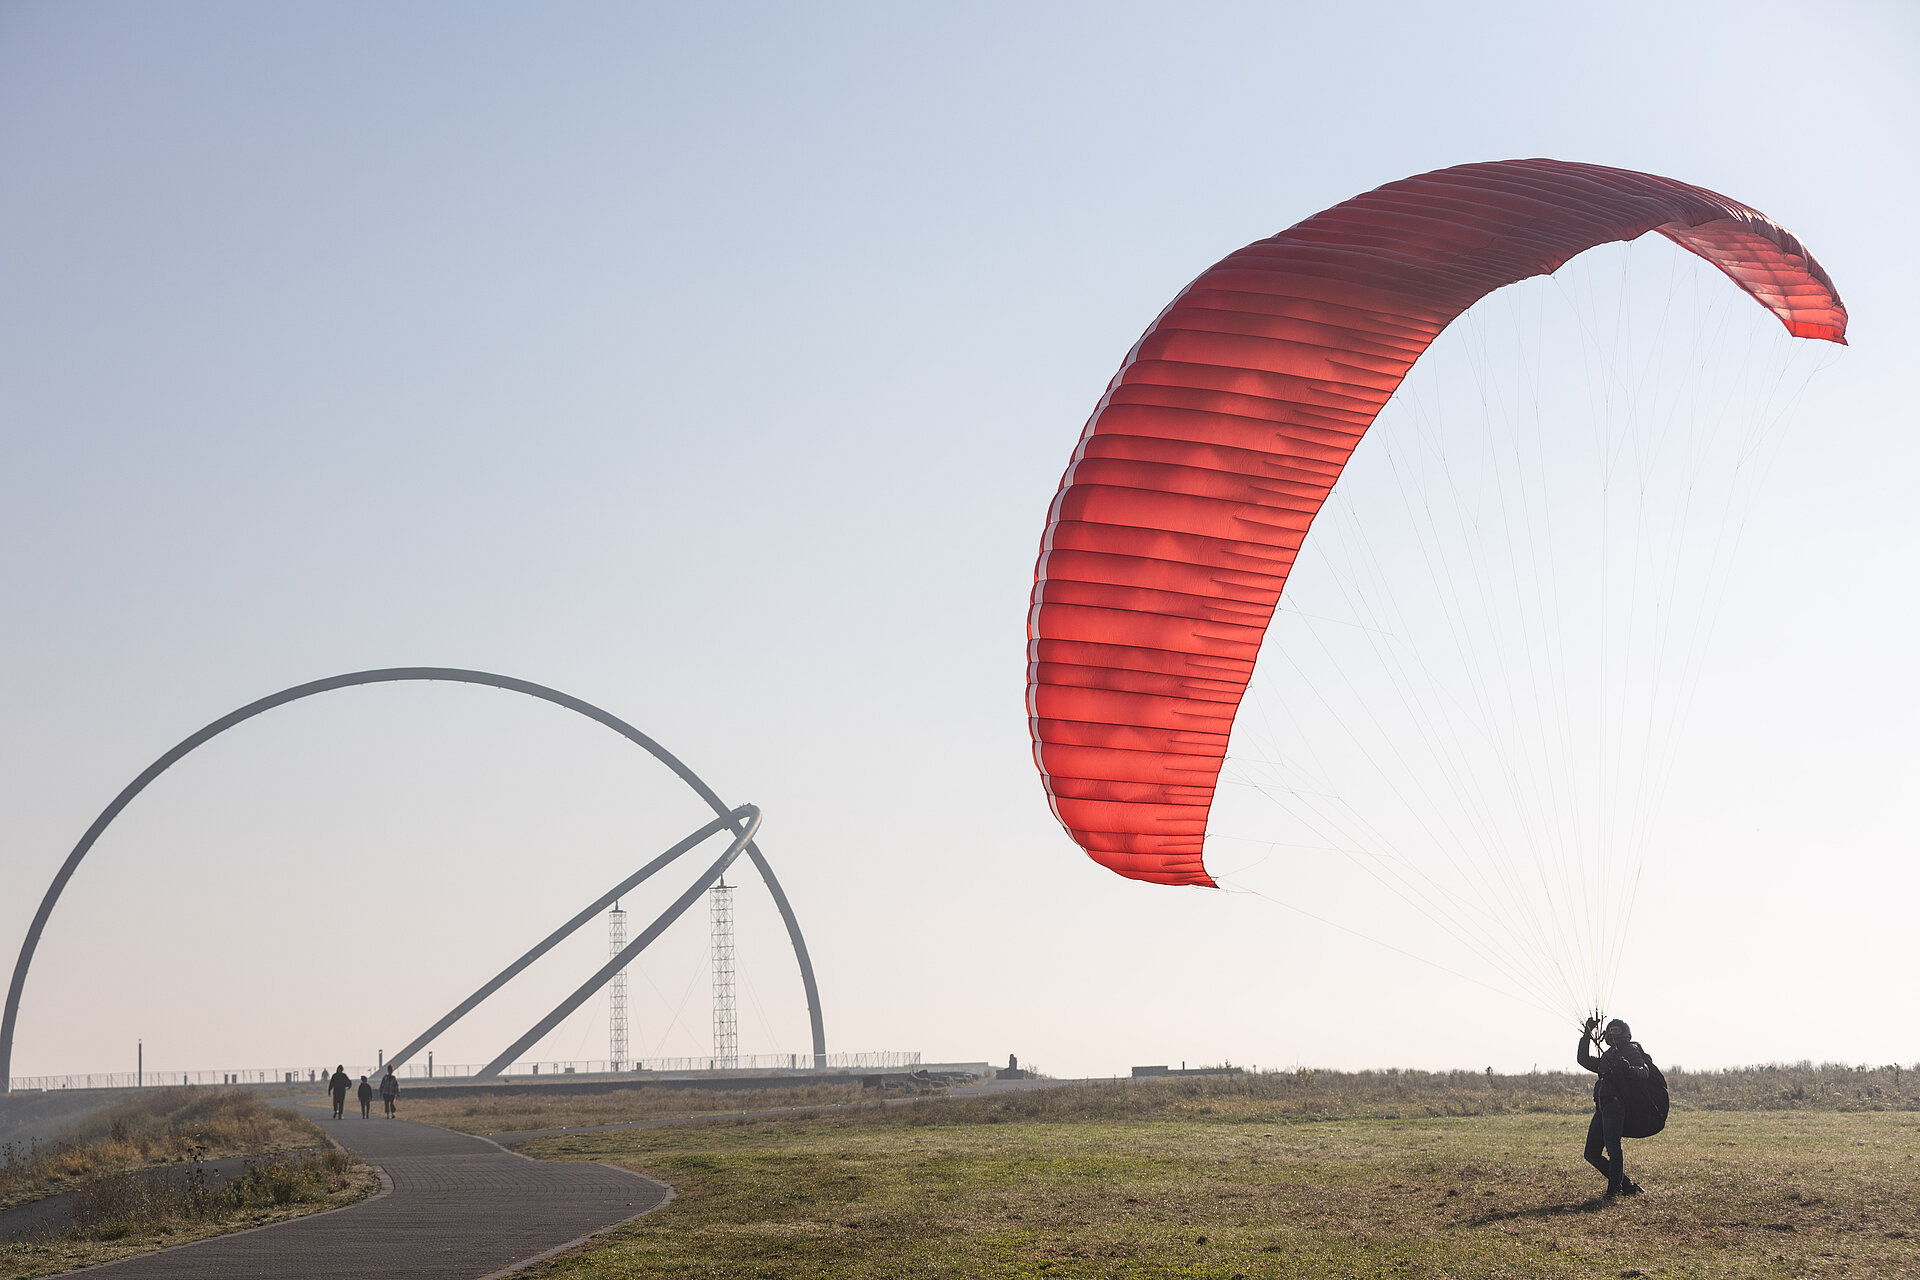 Paraglider kontrolliert Schirm auf Halde Hoheward